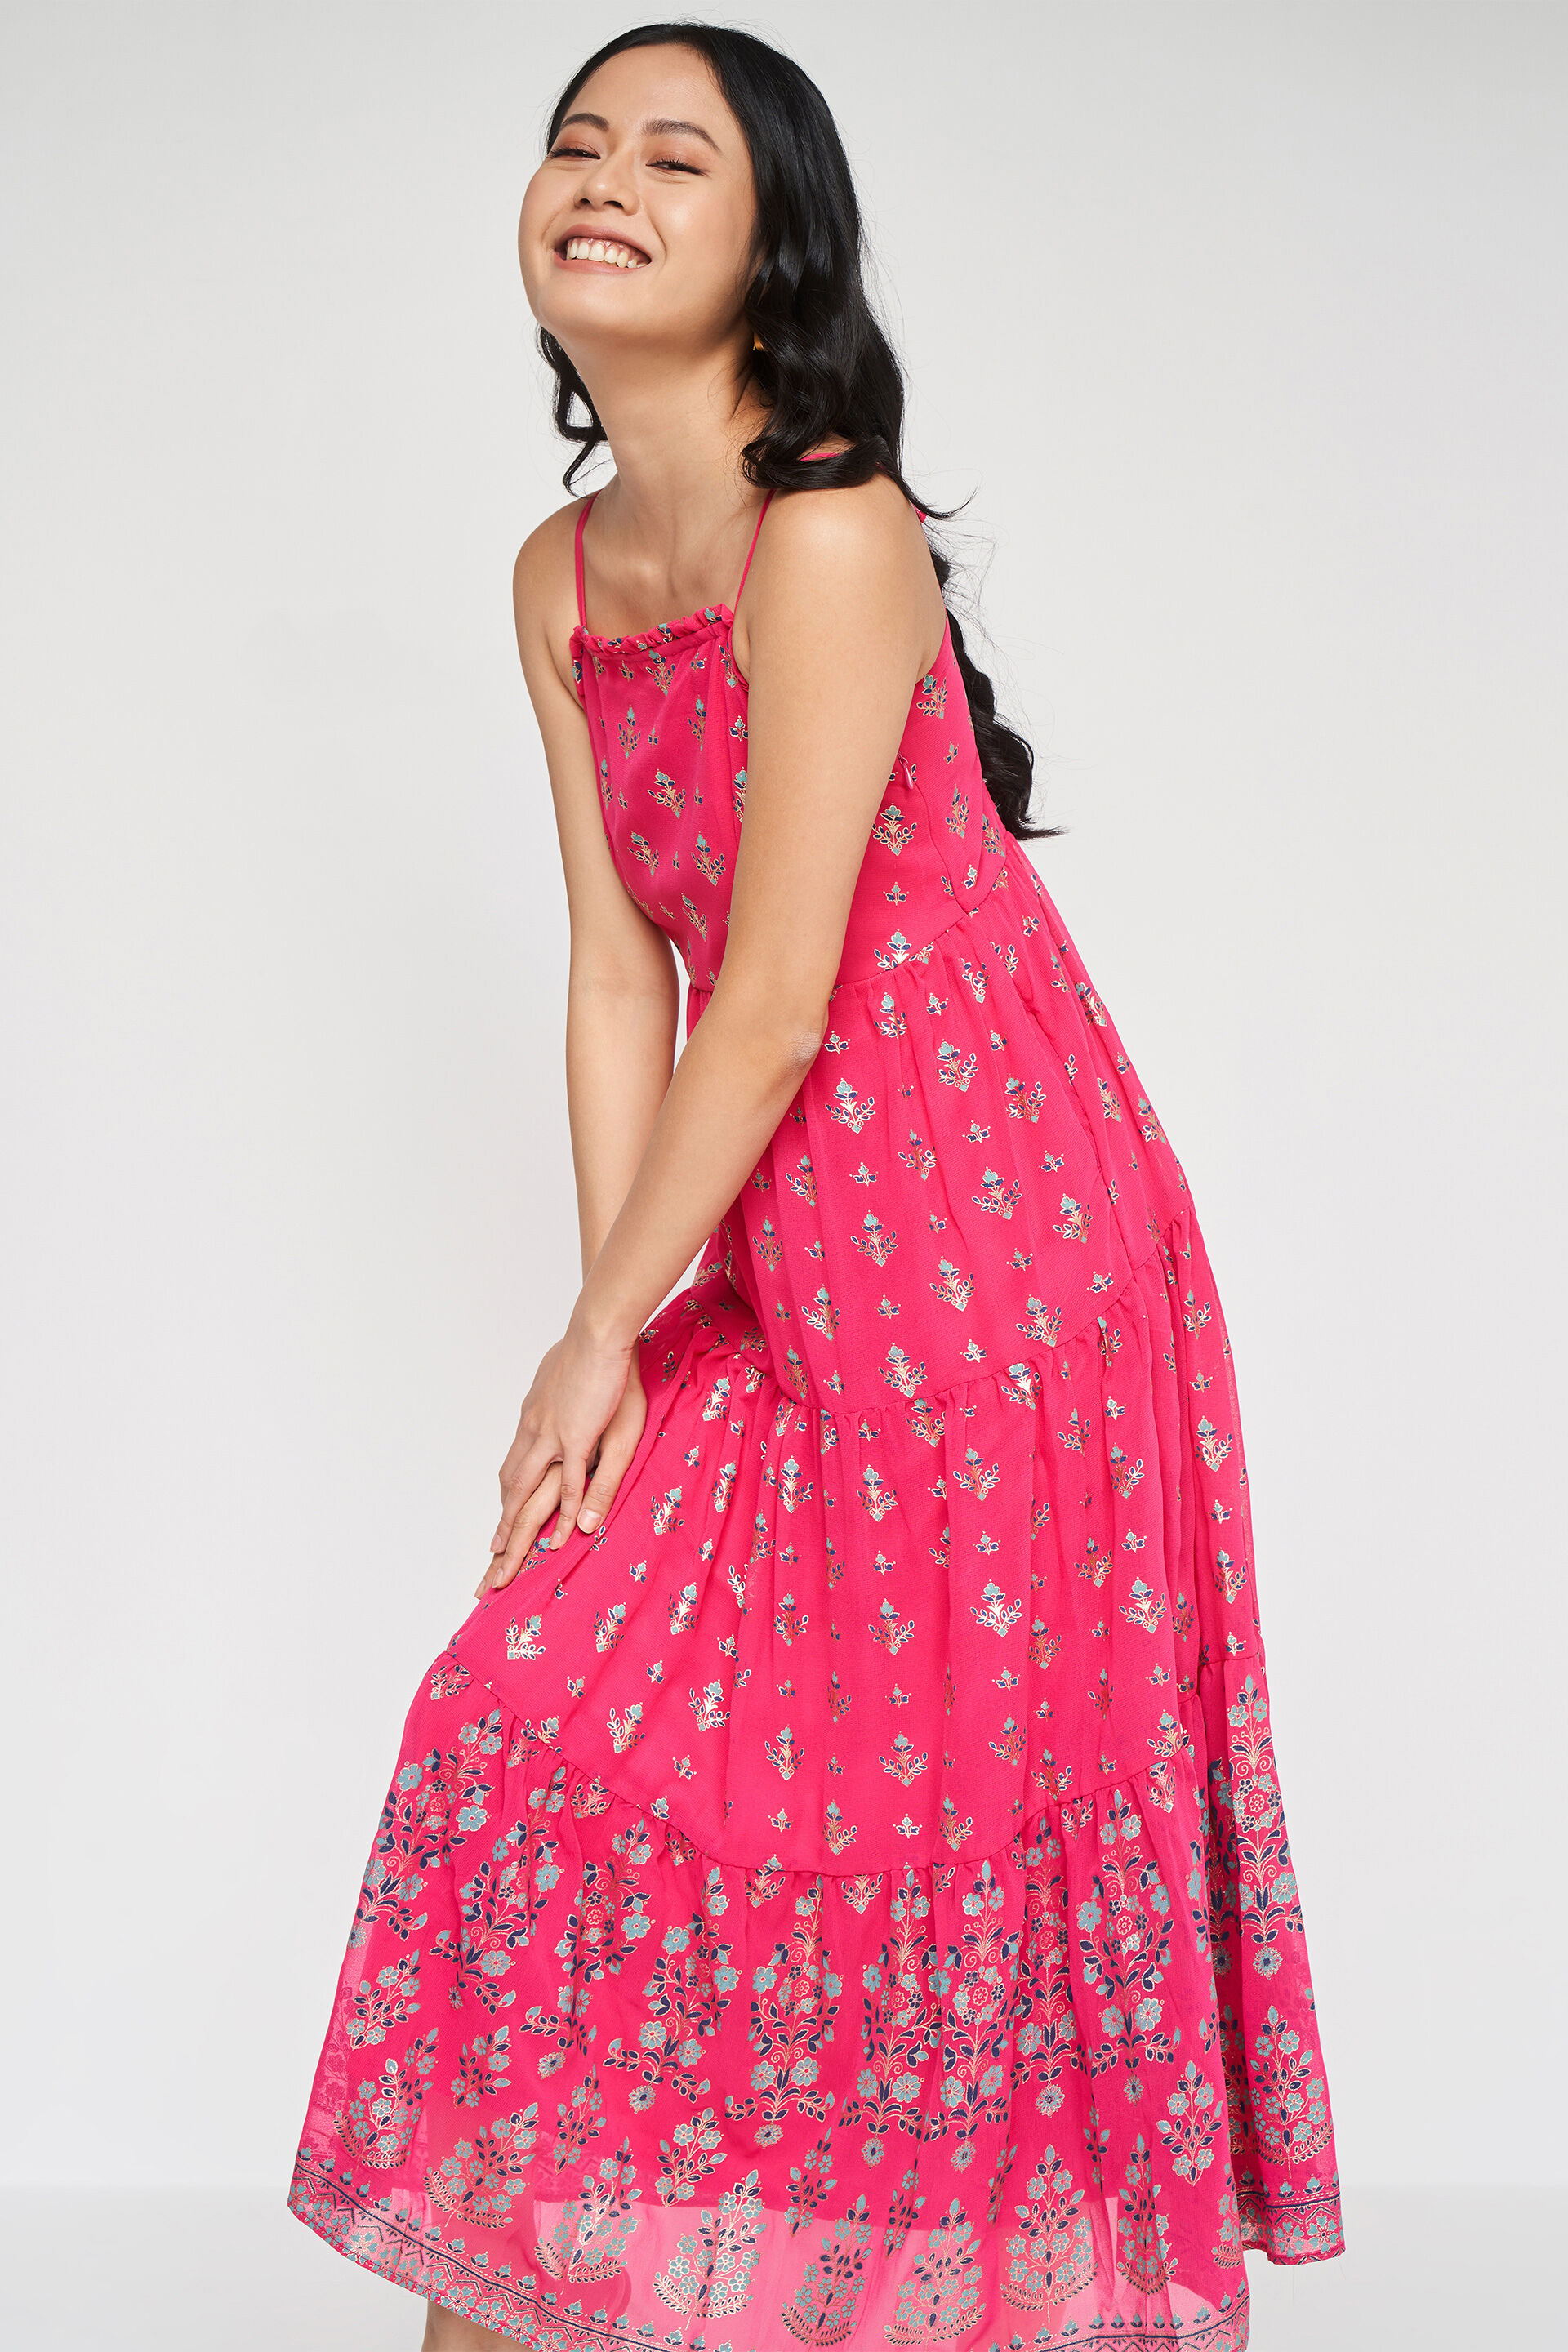 Sleeveless Dresses - Buy Sleeveless Dresses online in India